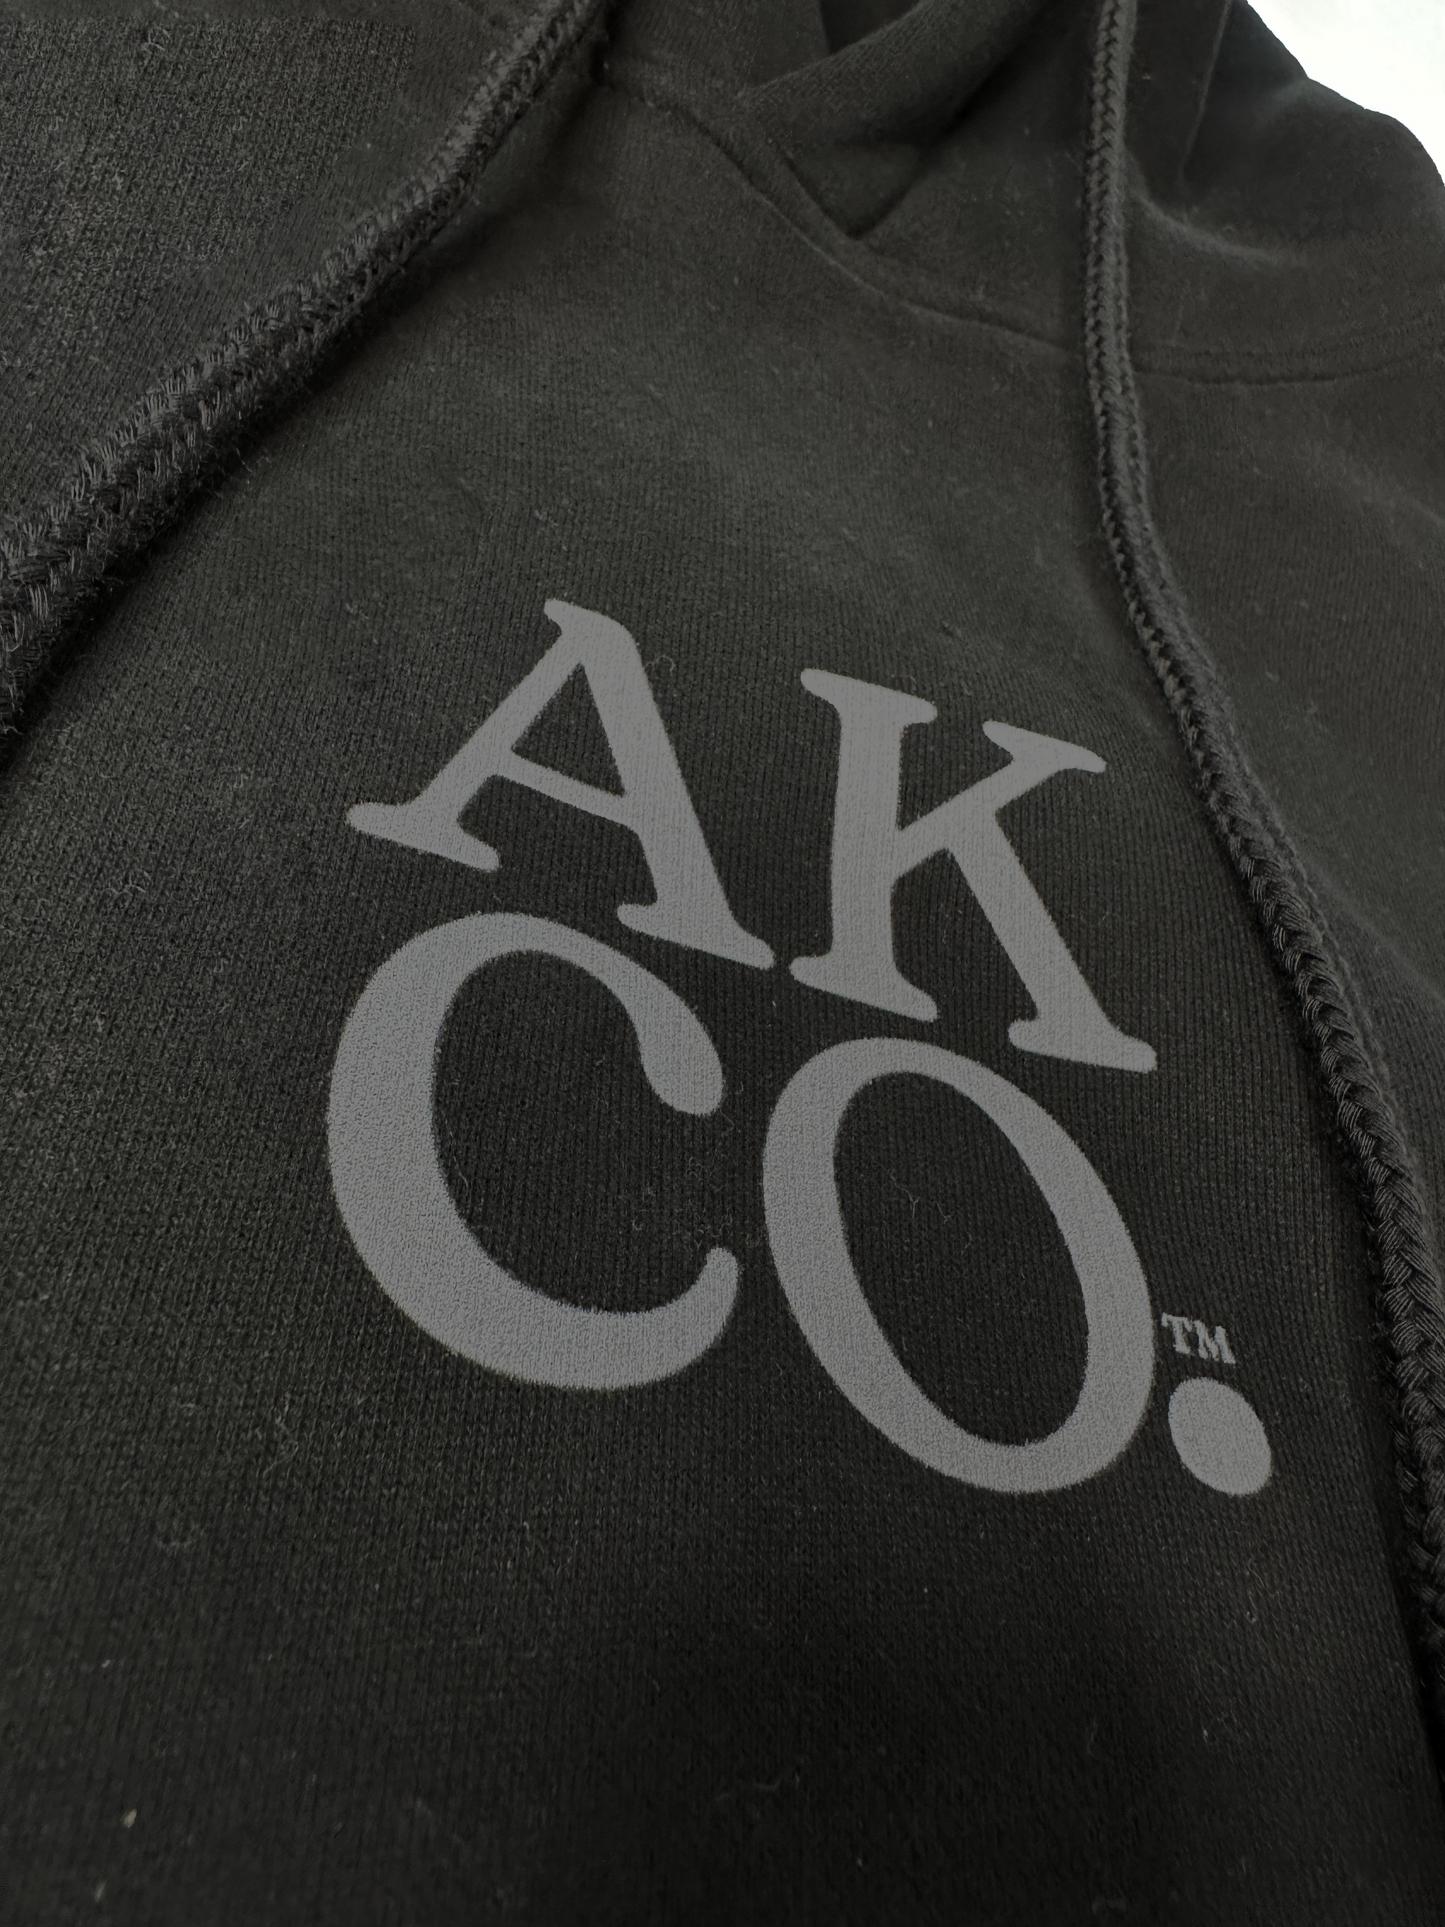 AKCO sueded black hoodie